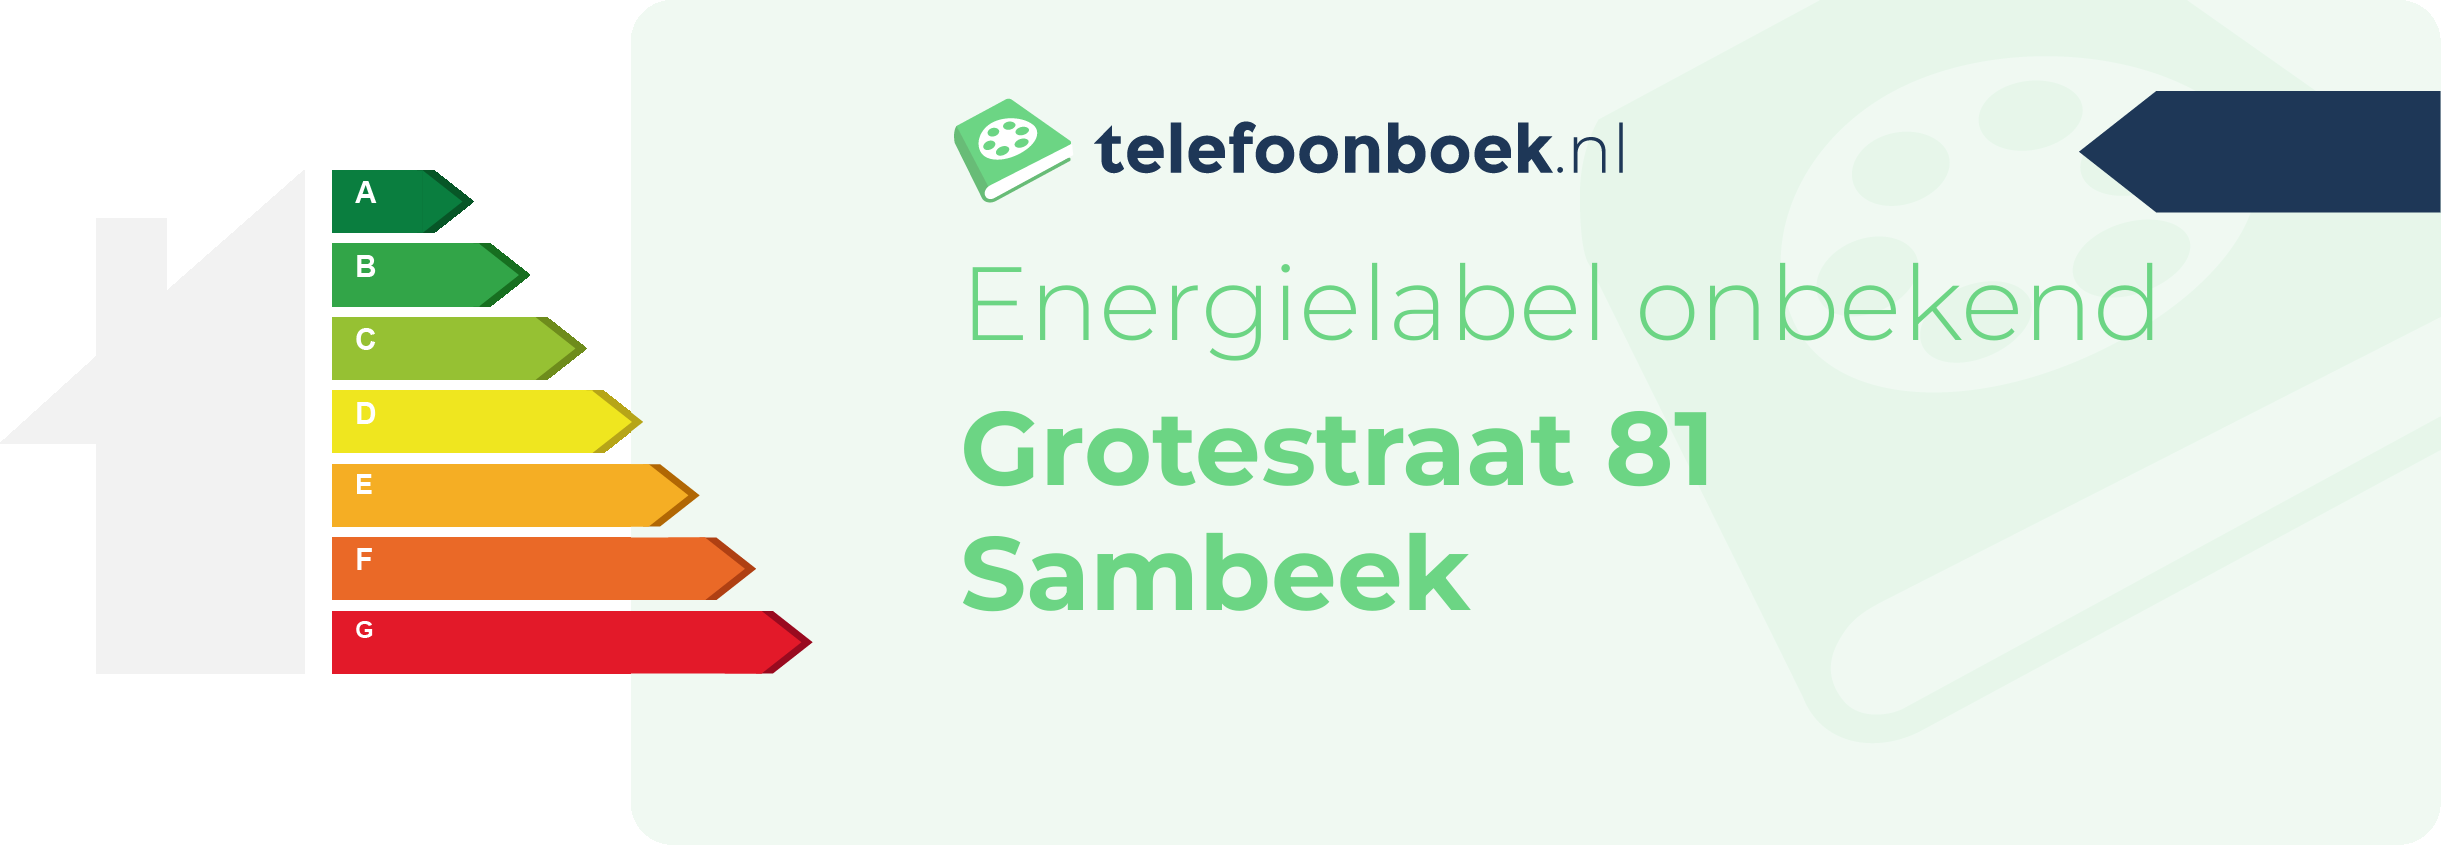 Energielabel Grotestraat 81 Sambeek